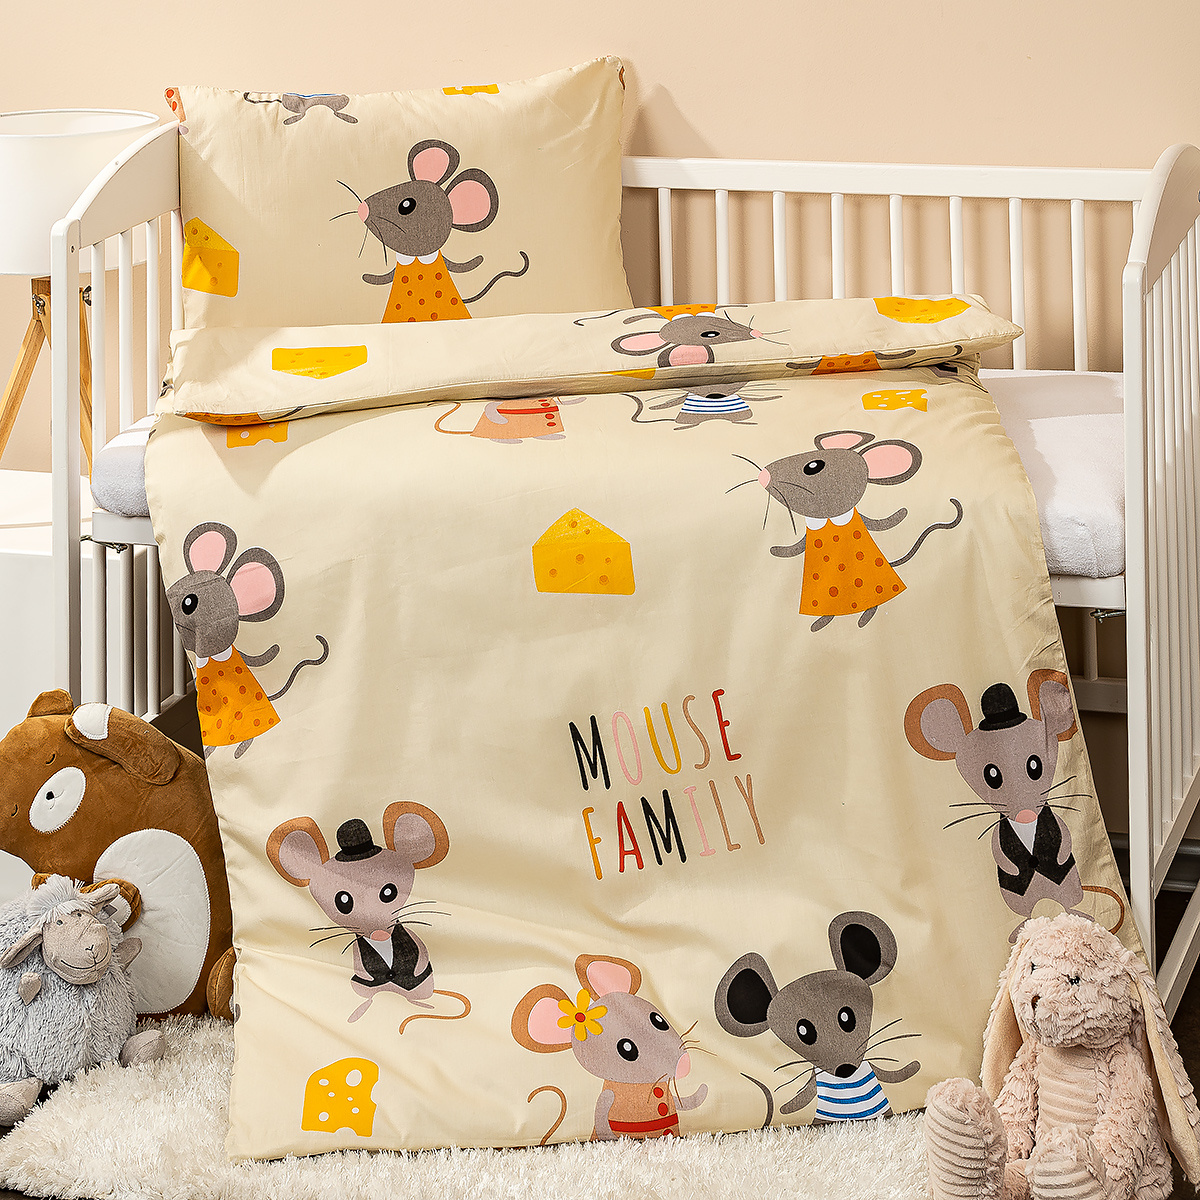 4home Detské bavlnené obliečky do postieľky Little mouse, 100 x 135 cm, 40 x 60 cm